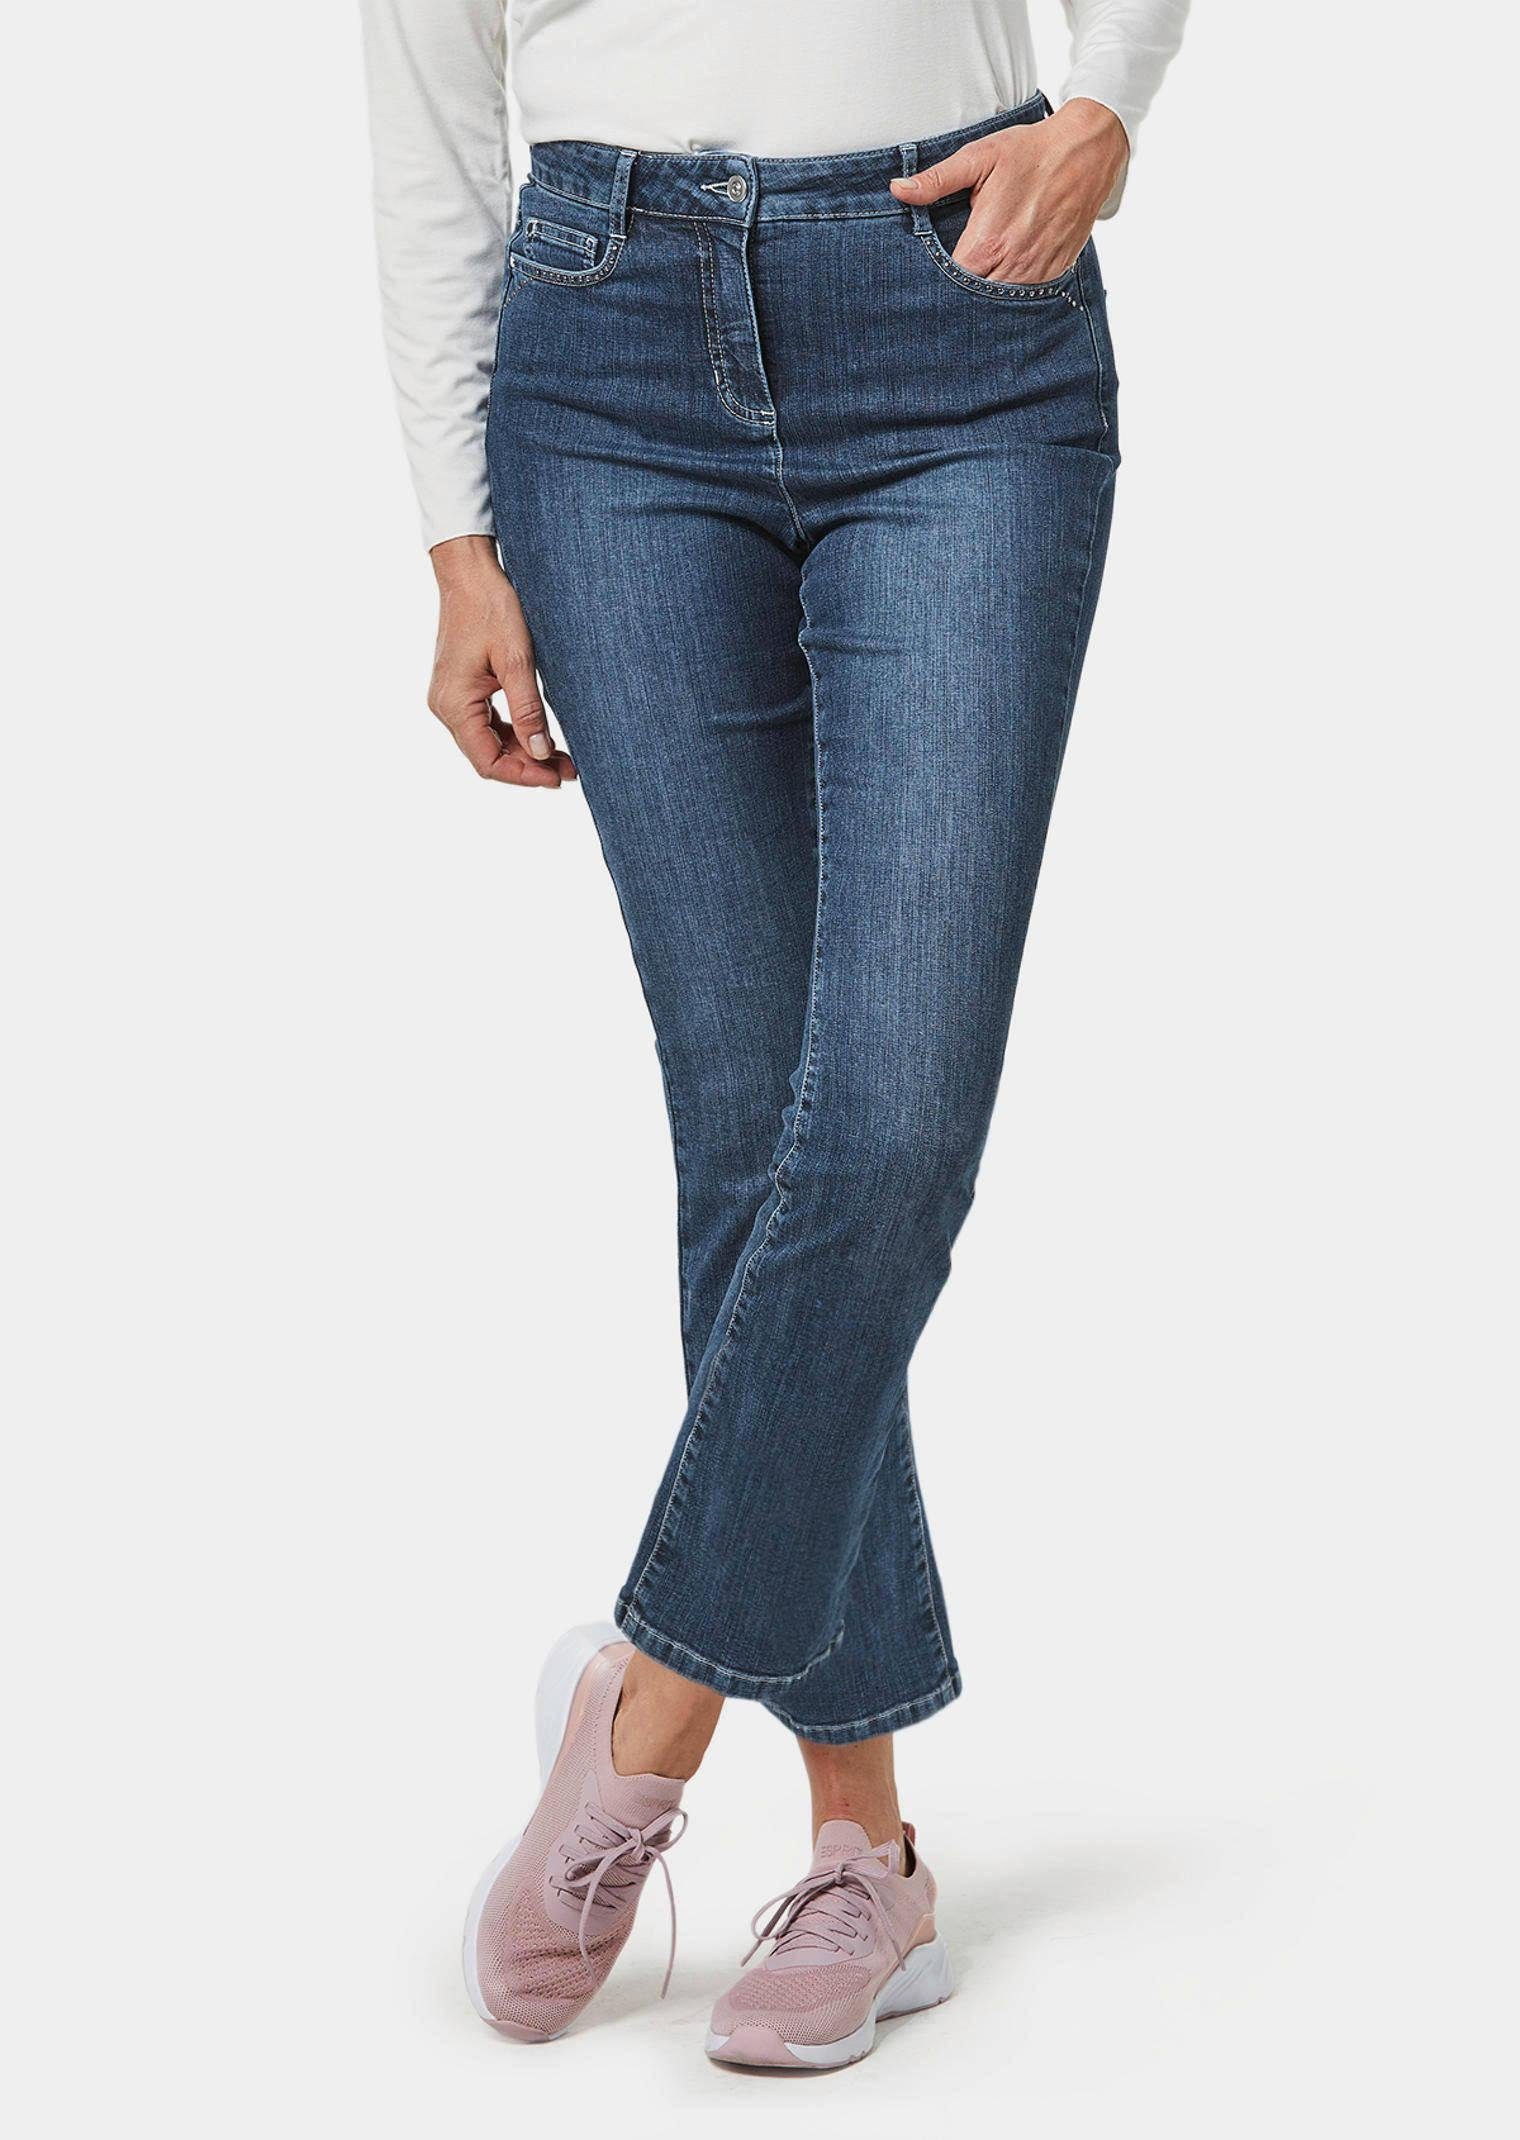 GOLDNER Bequeme Jeans Kurzgröße:, Weiche, elastische Denimware für hohen  Tragekomfort